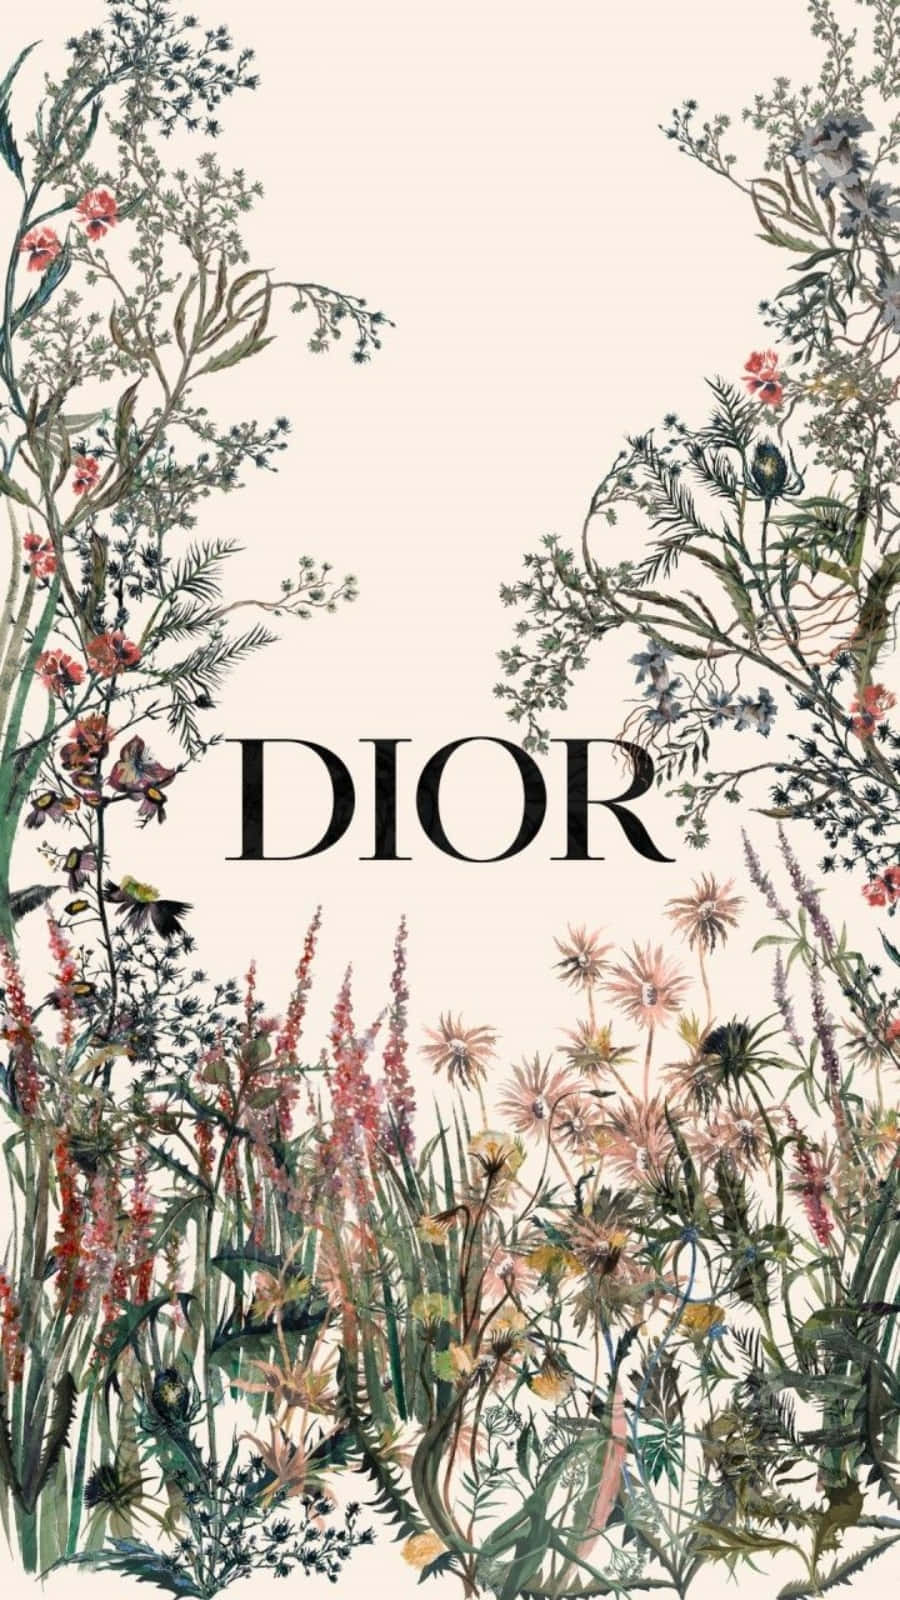 Løftdit Ensemble Til Et Nyt Niveau Med En Smule Luksus Med Denne Fantastiske Håndtaske Fra House Of Dior!